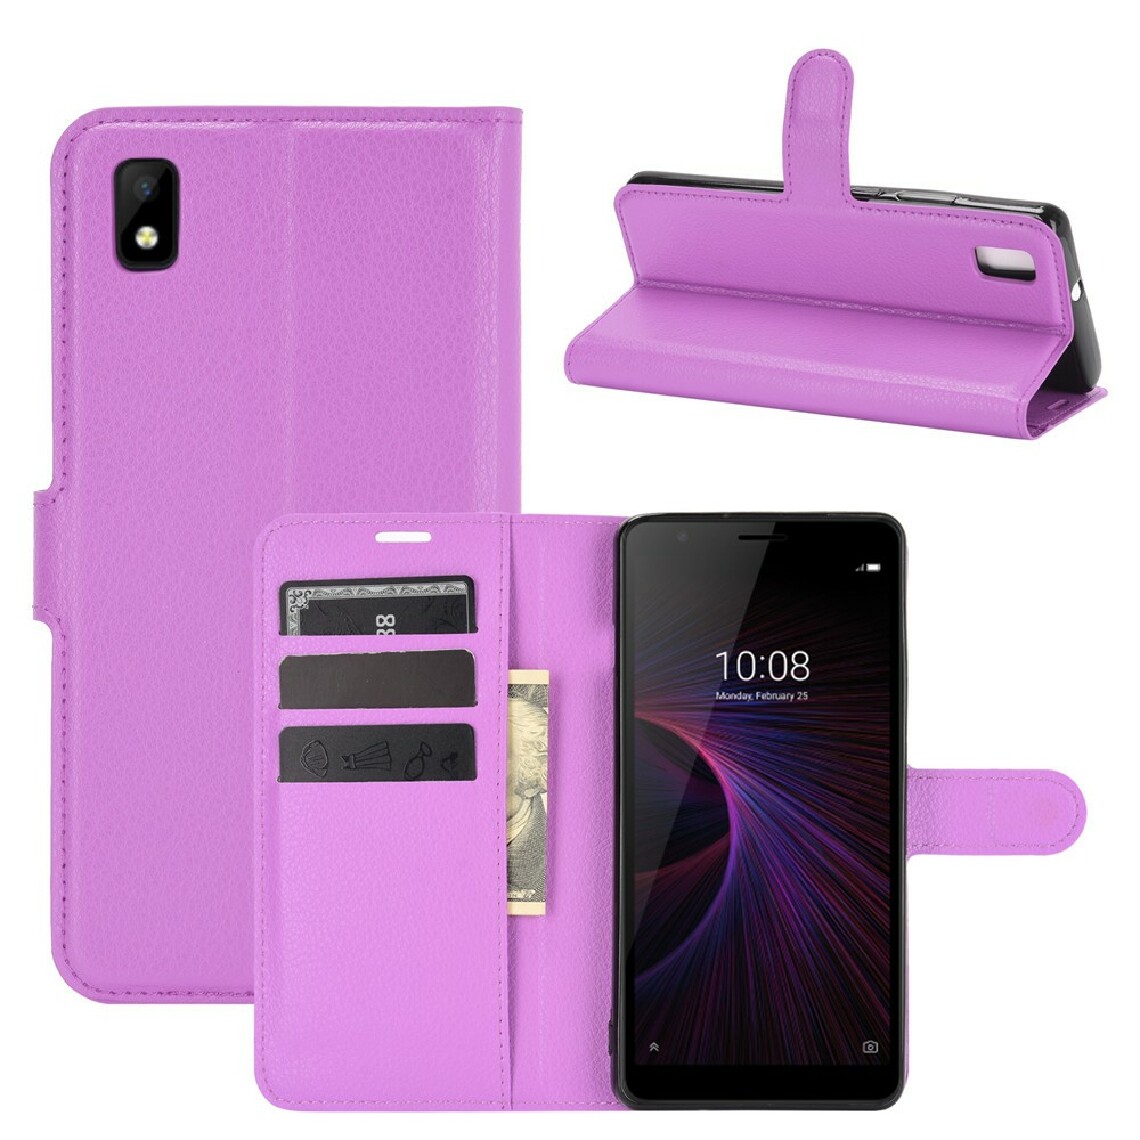 Other - Etui en PU texture de litchi avec support violet pour votre ZTE Blade L210 - Coque, étui smartphone